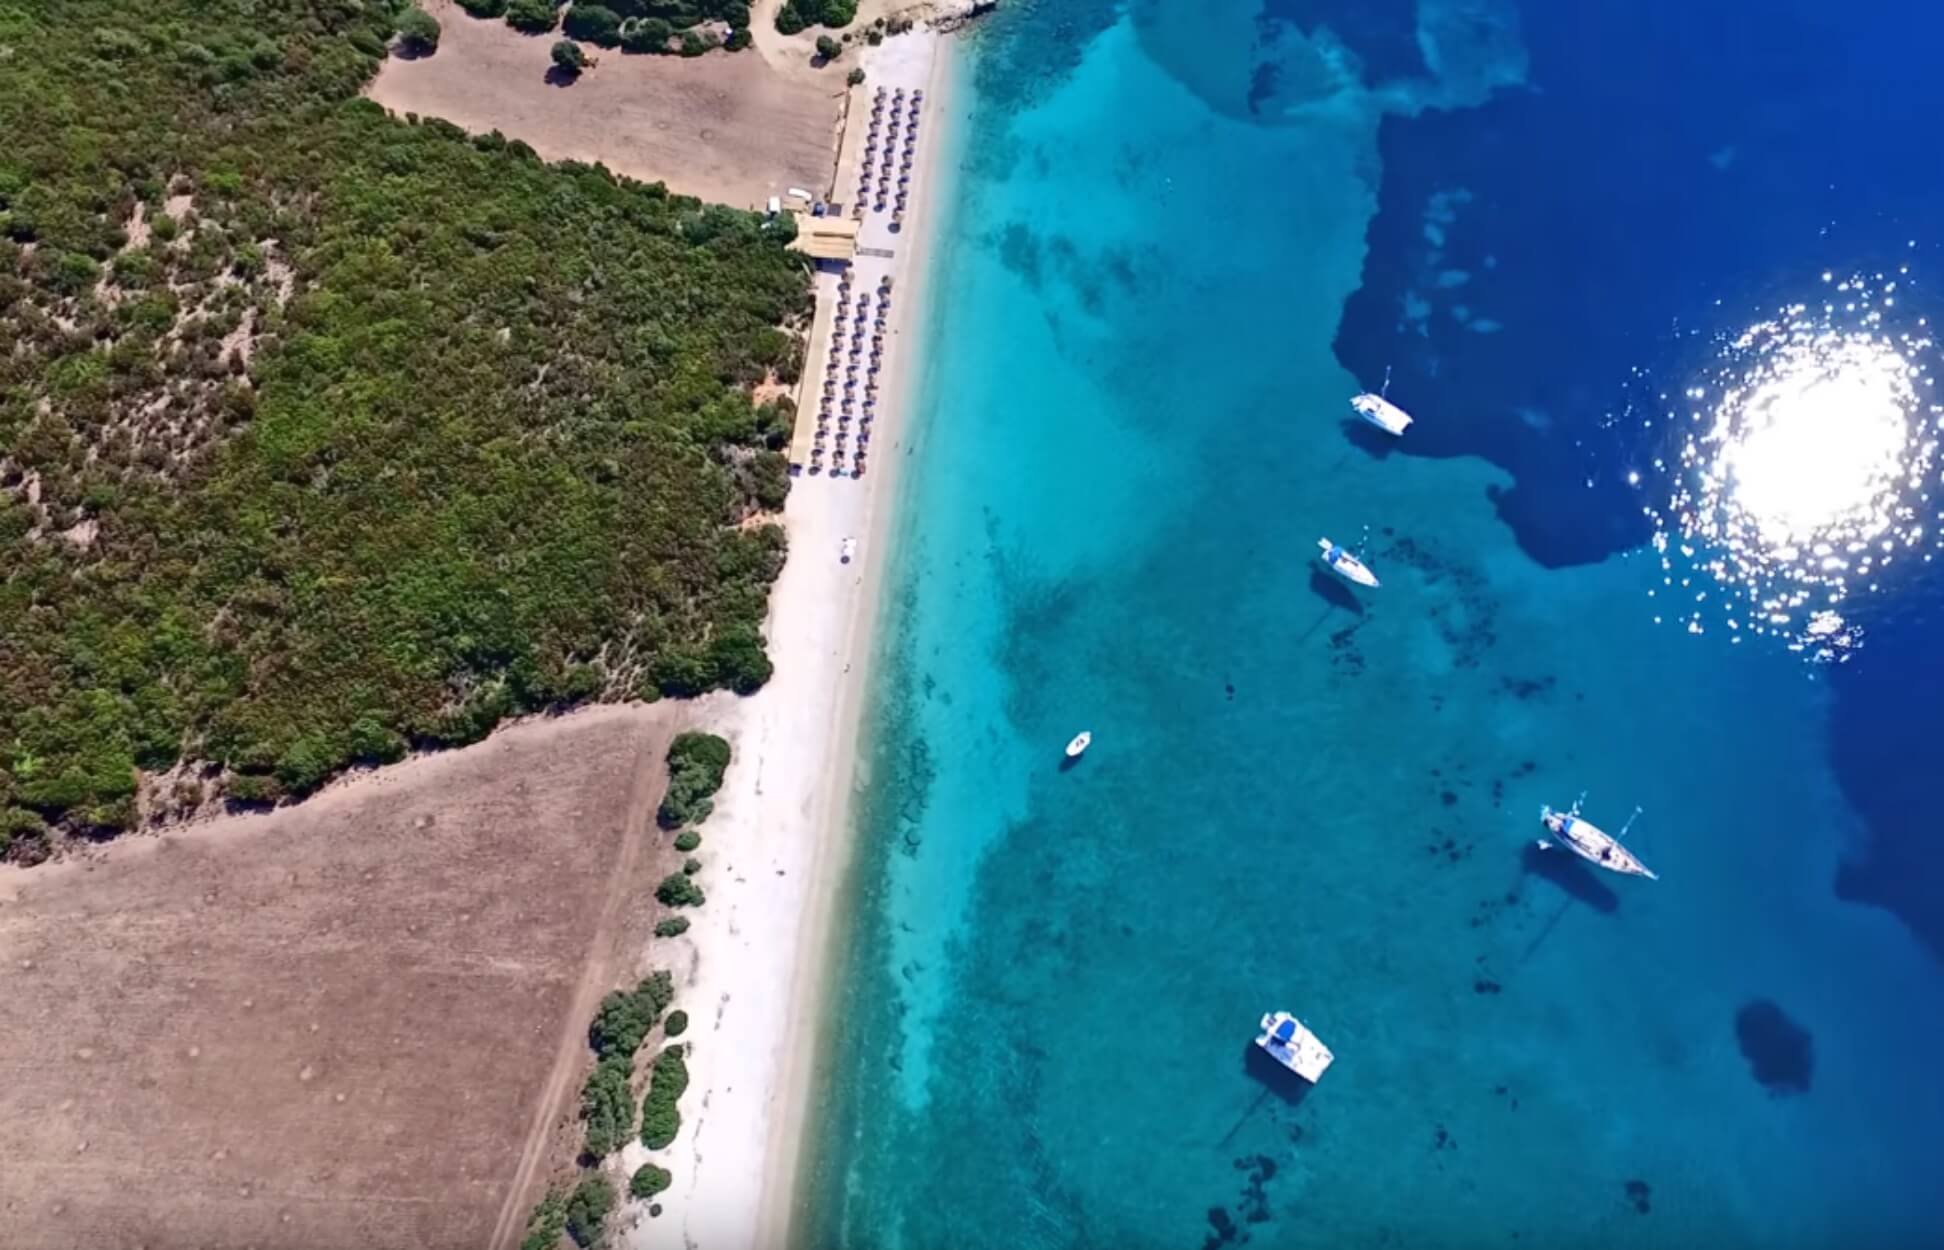 Αιτωλοακαρνανία: Η άγνωστη εξωτική παραλία με τα γαλαζοπράσινα νερά